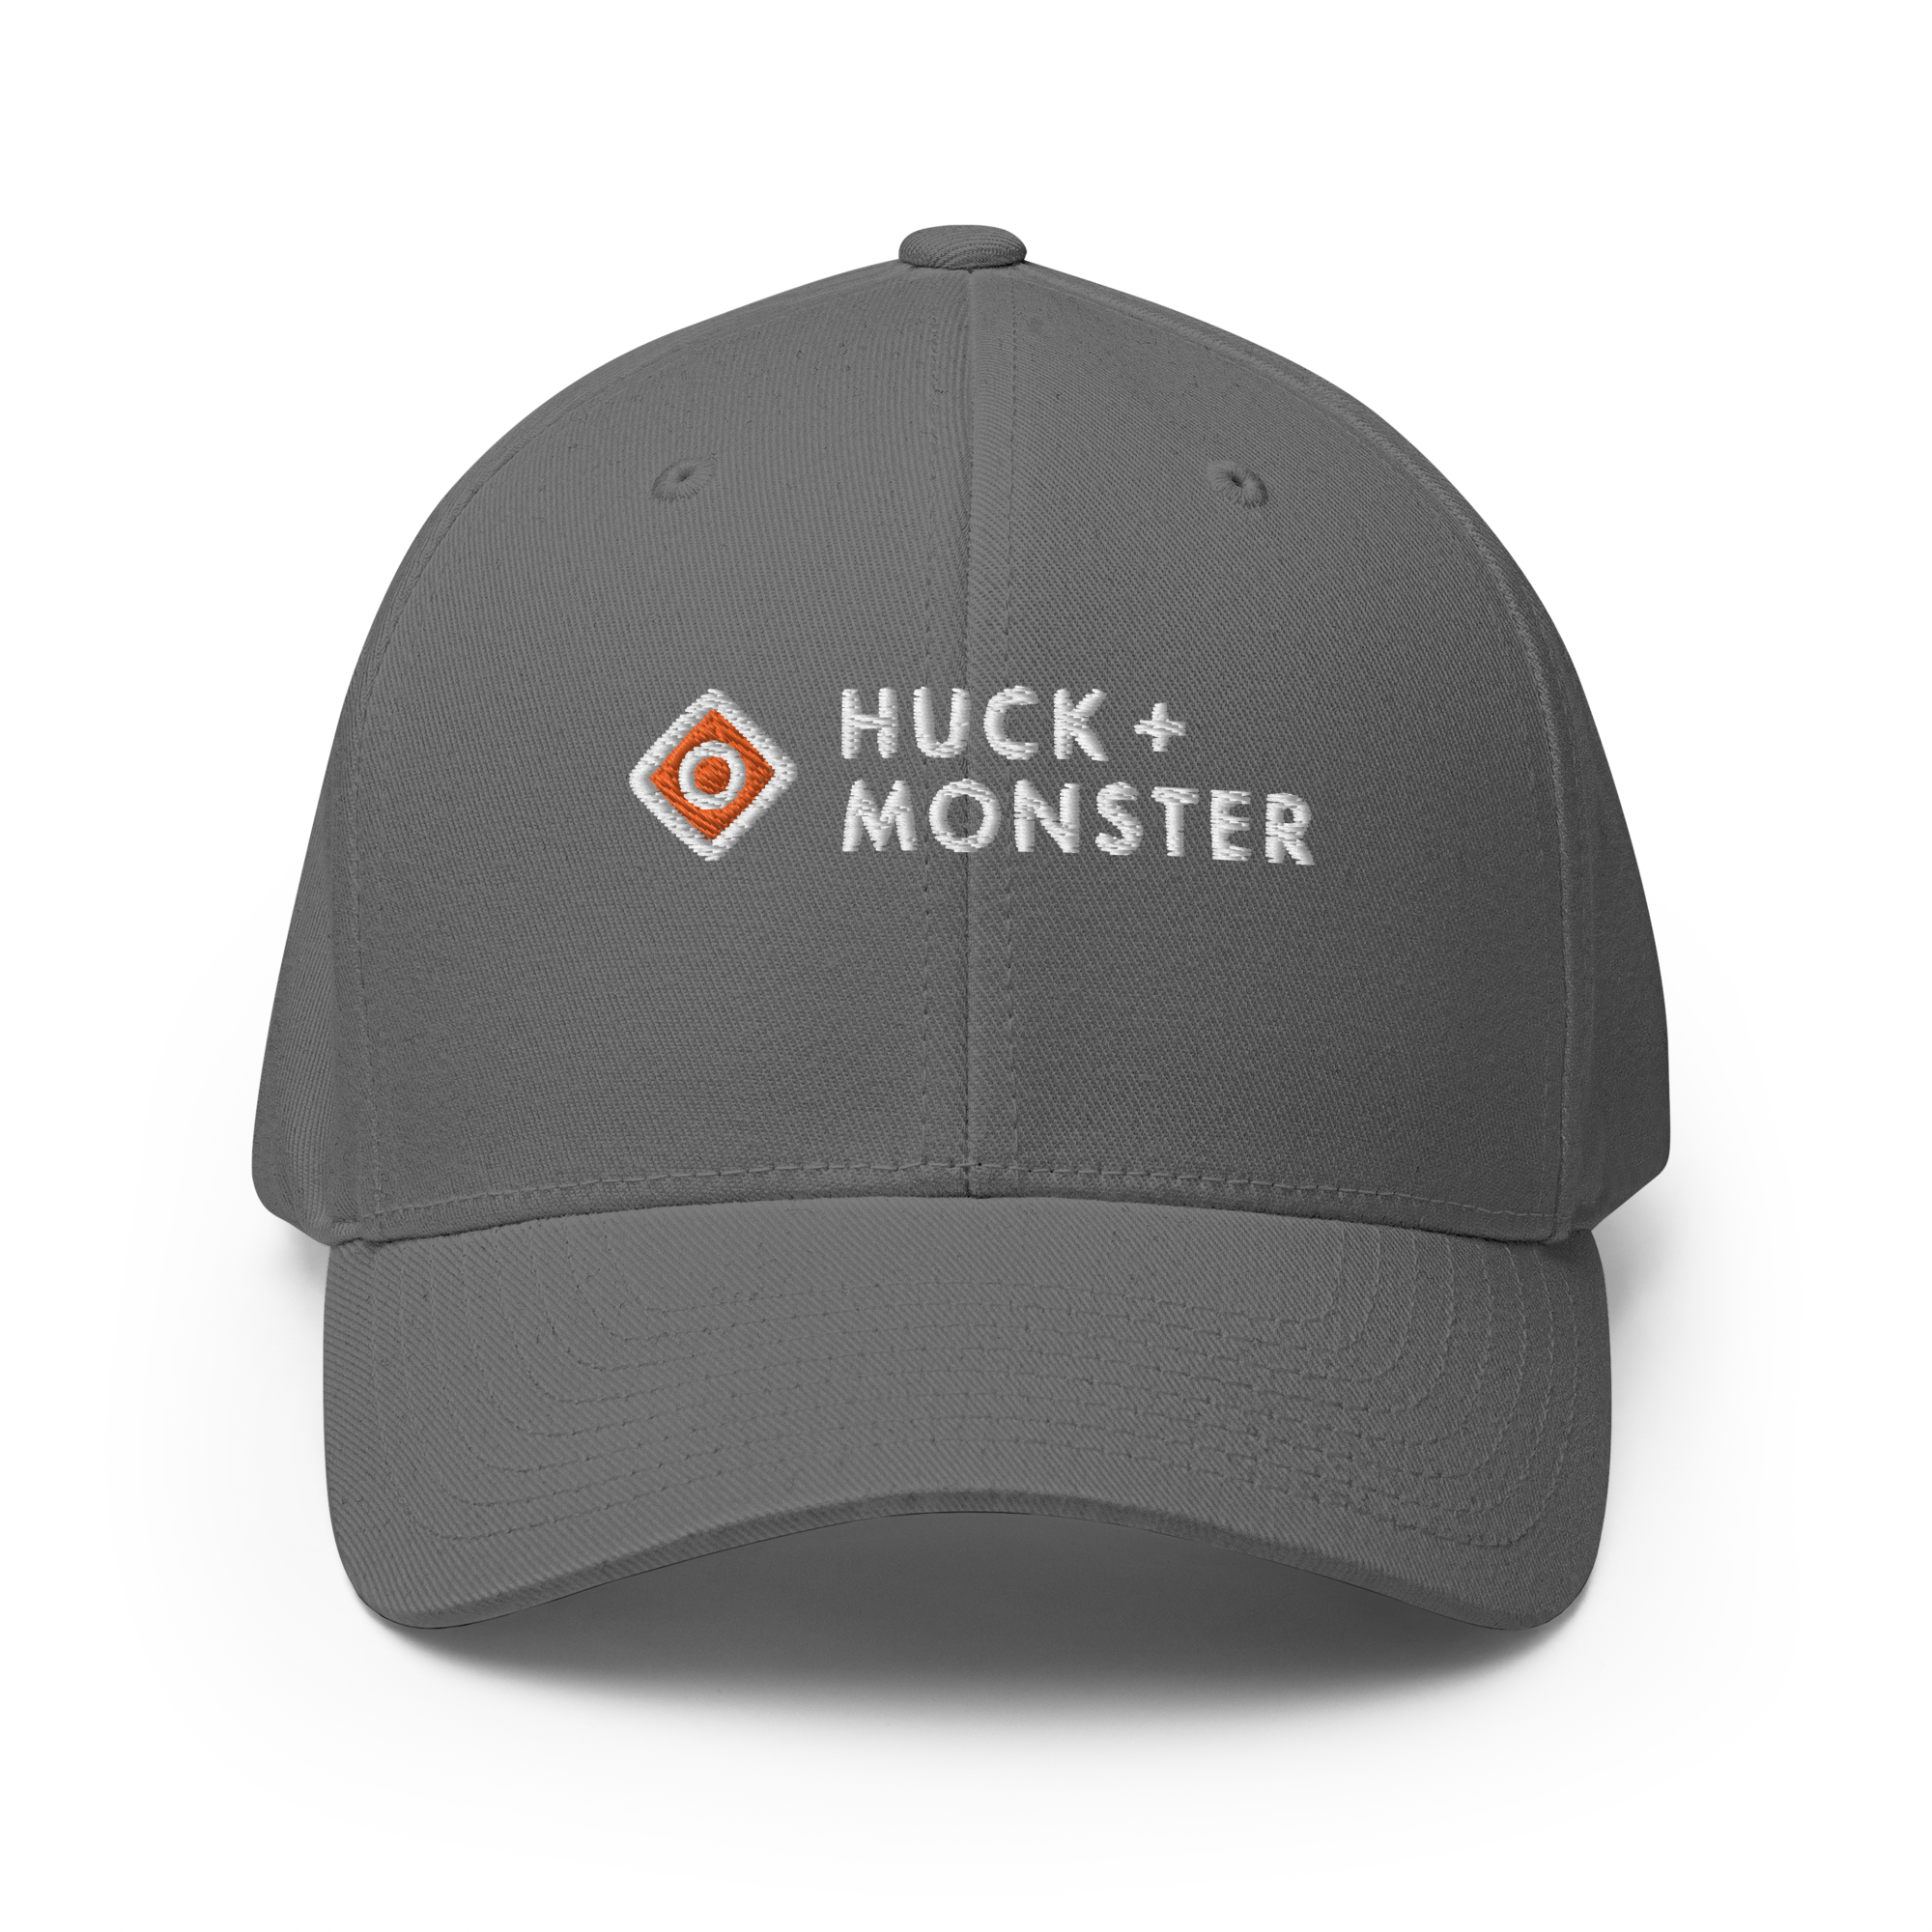 + Monster Huck Player Cap